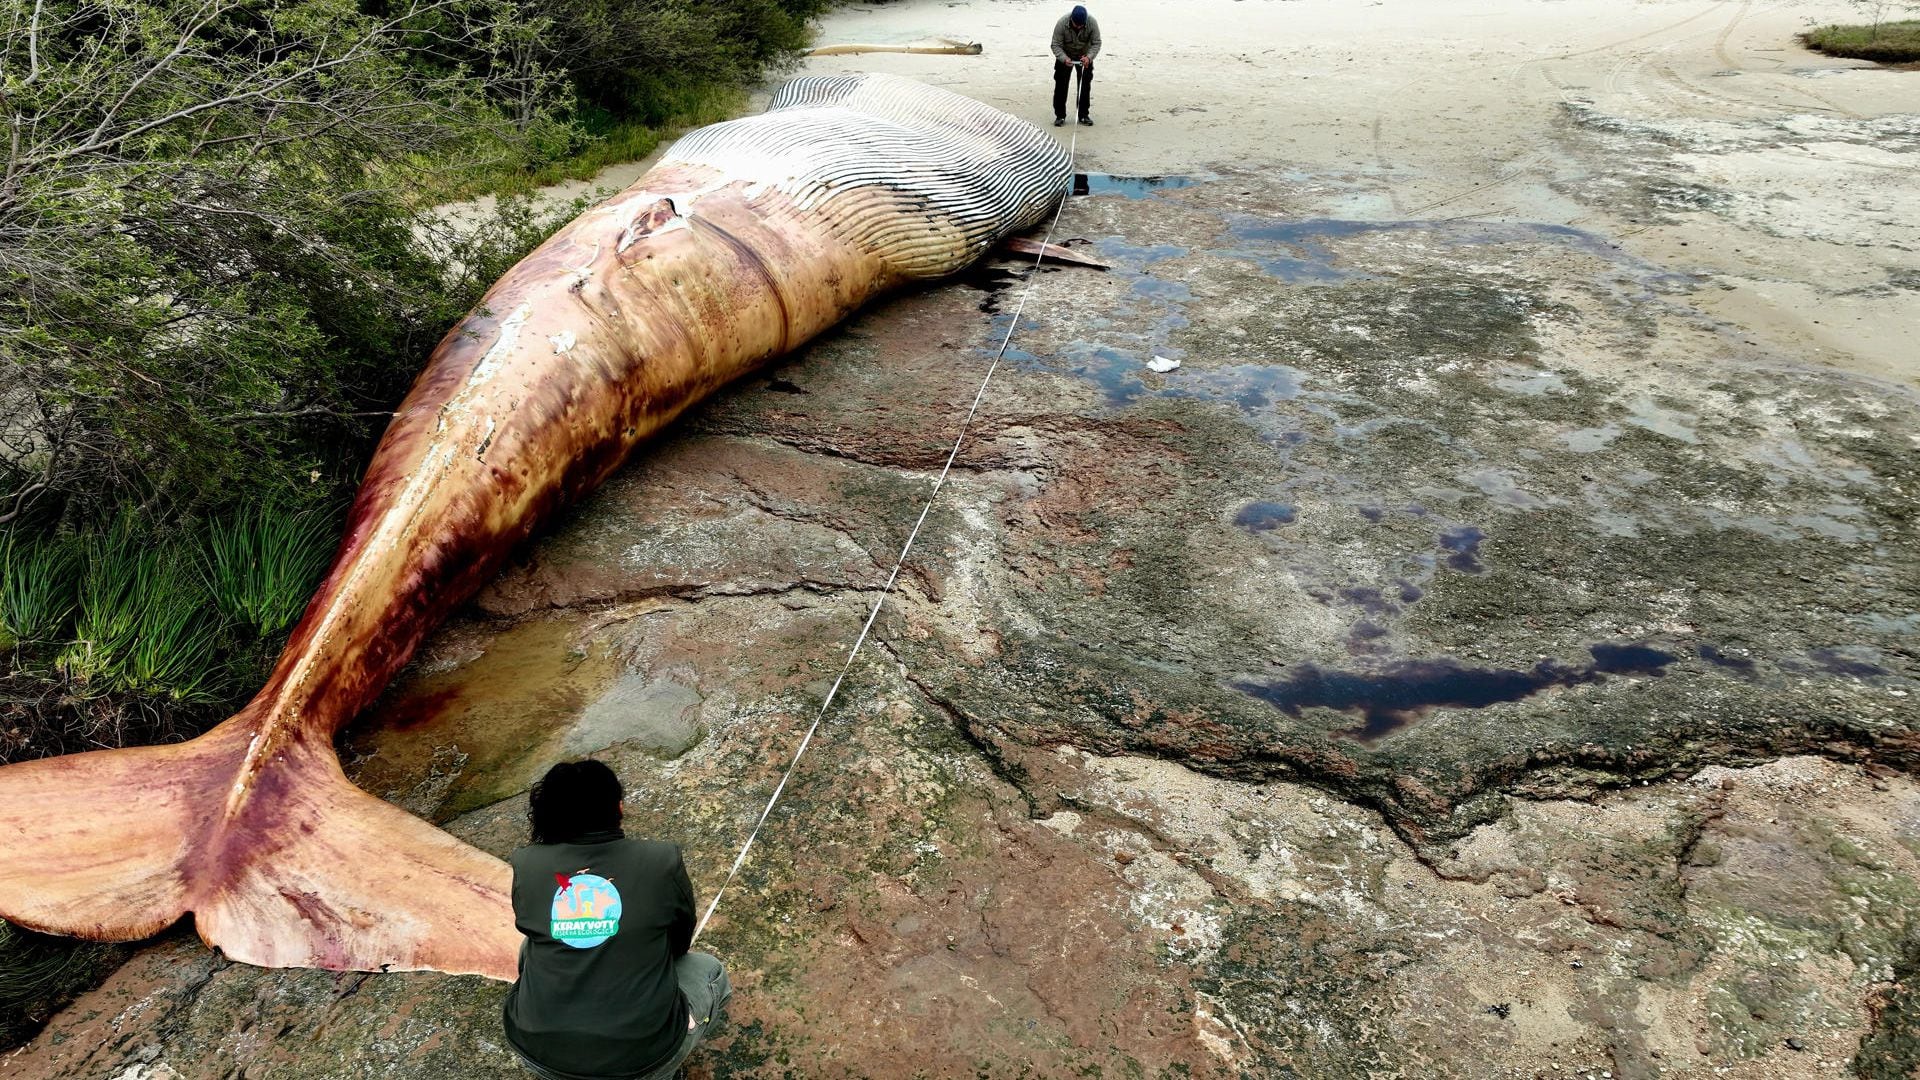 La ballena mide 15,5 metros de largo y pesa alrededor de 20 toneladas  (EFE/ Reserva Kerayvoty)
